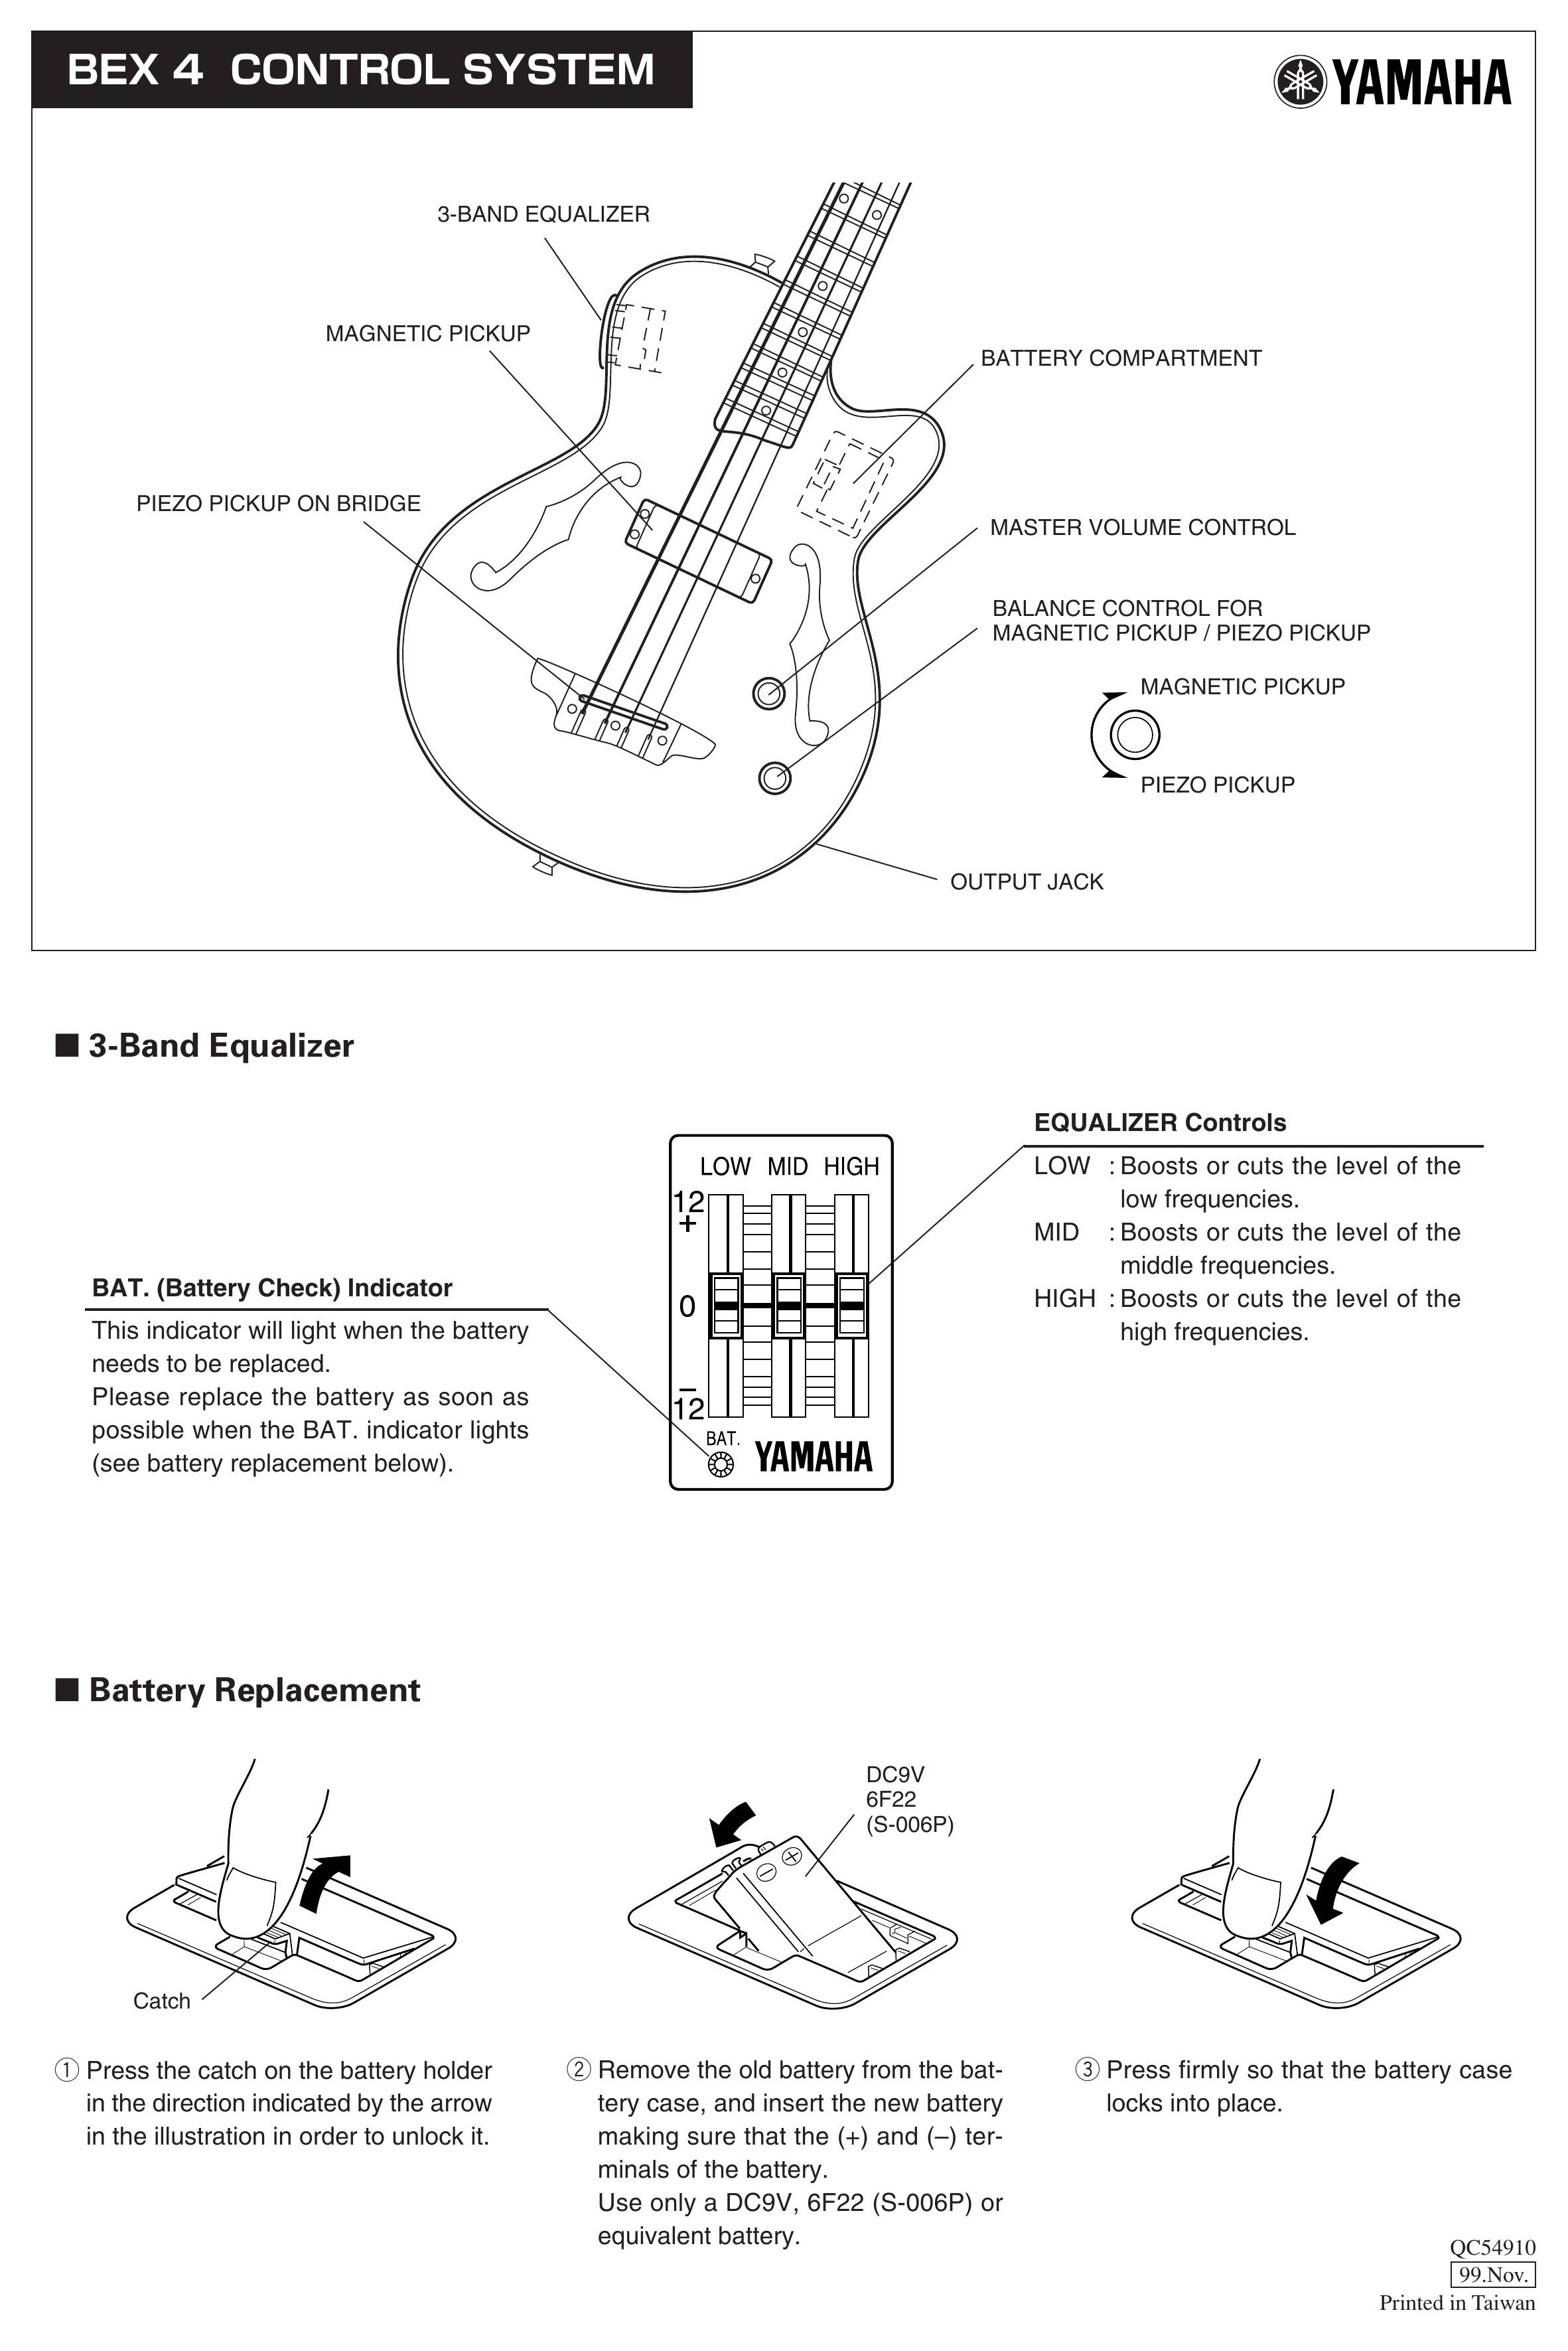 Yamaha BEX 4 Guitar User Manual